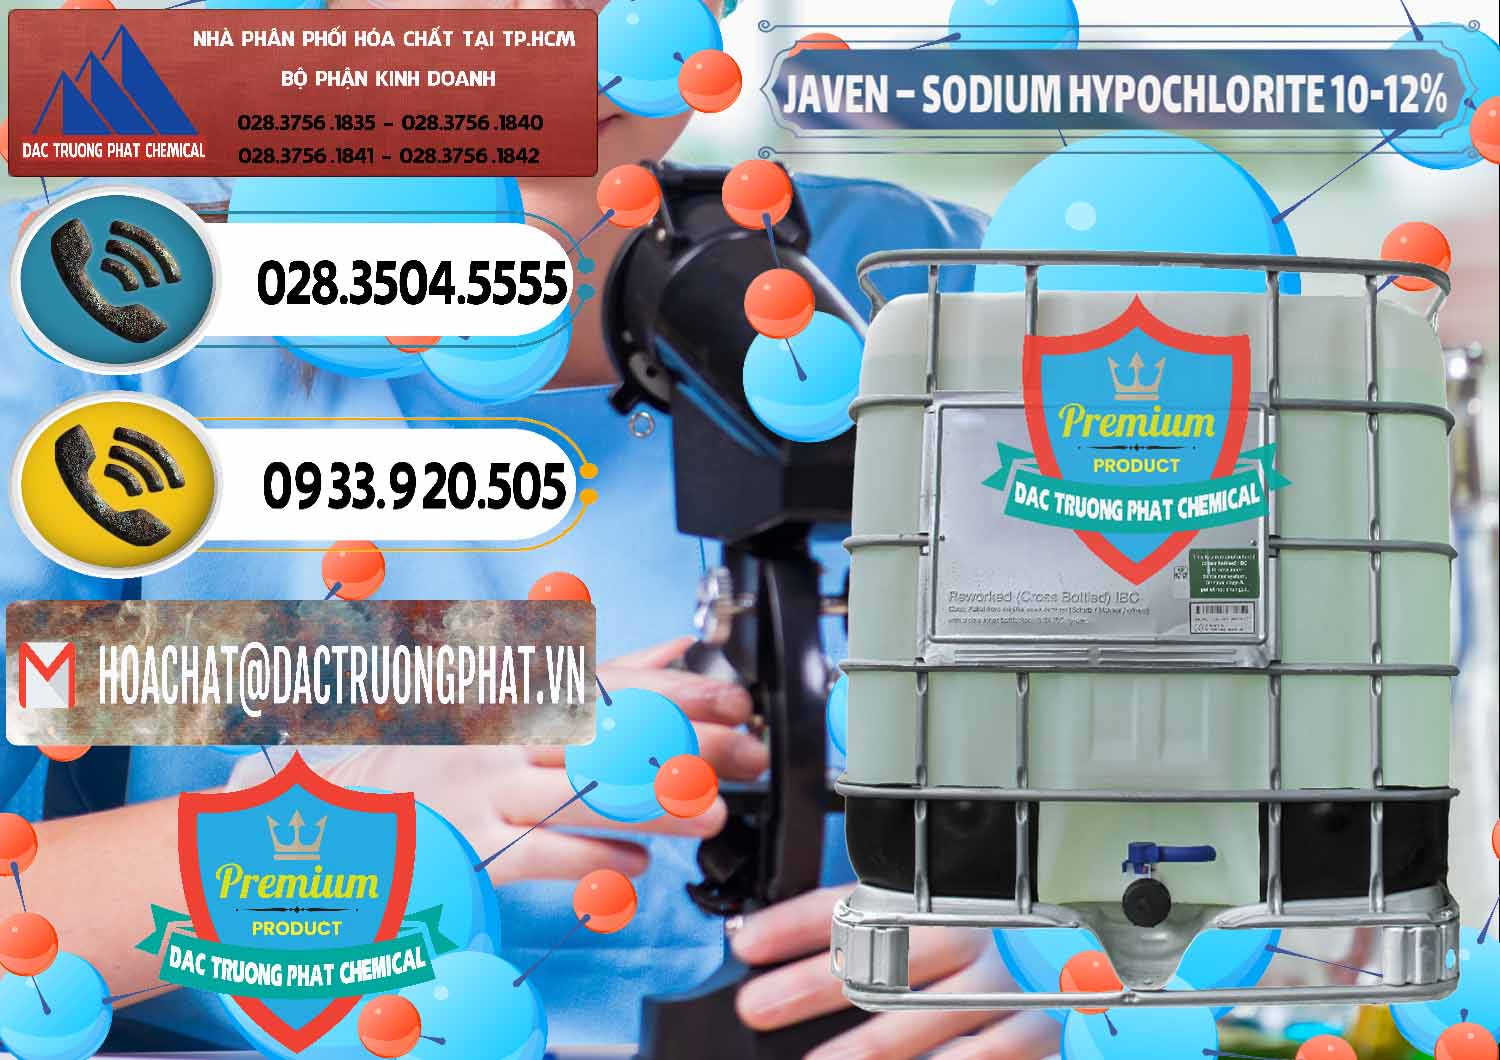 Nơi chuyên bán & phân phối Javen - Sodium Hypochlorite 10-12% Việt Nam - 0188 - Nhà cung cấp ( bán ) hóa chất tại TP.HCM - hoachatdetnhuom.vn